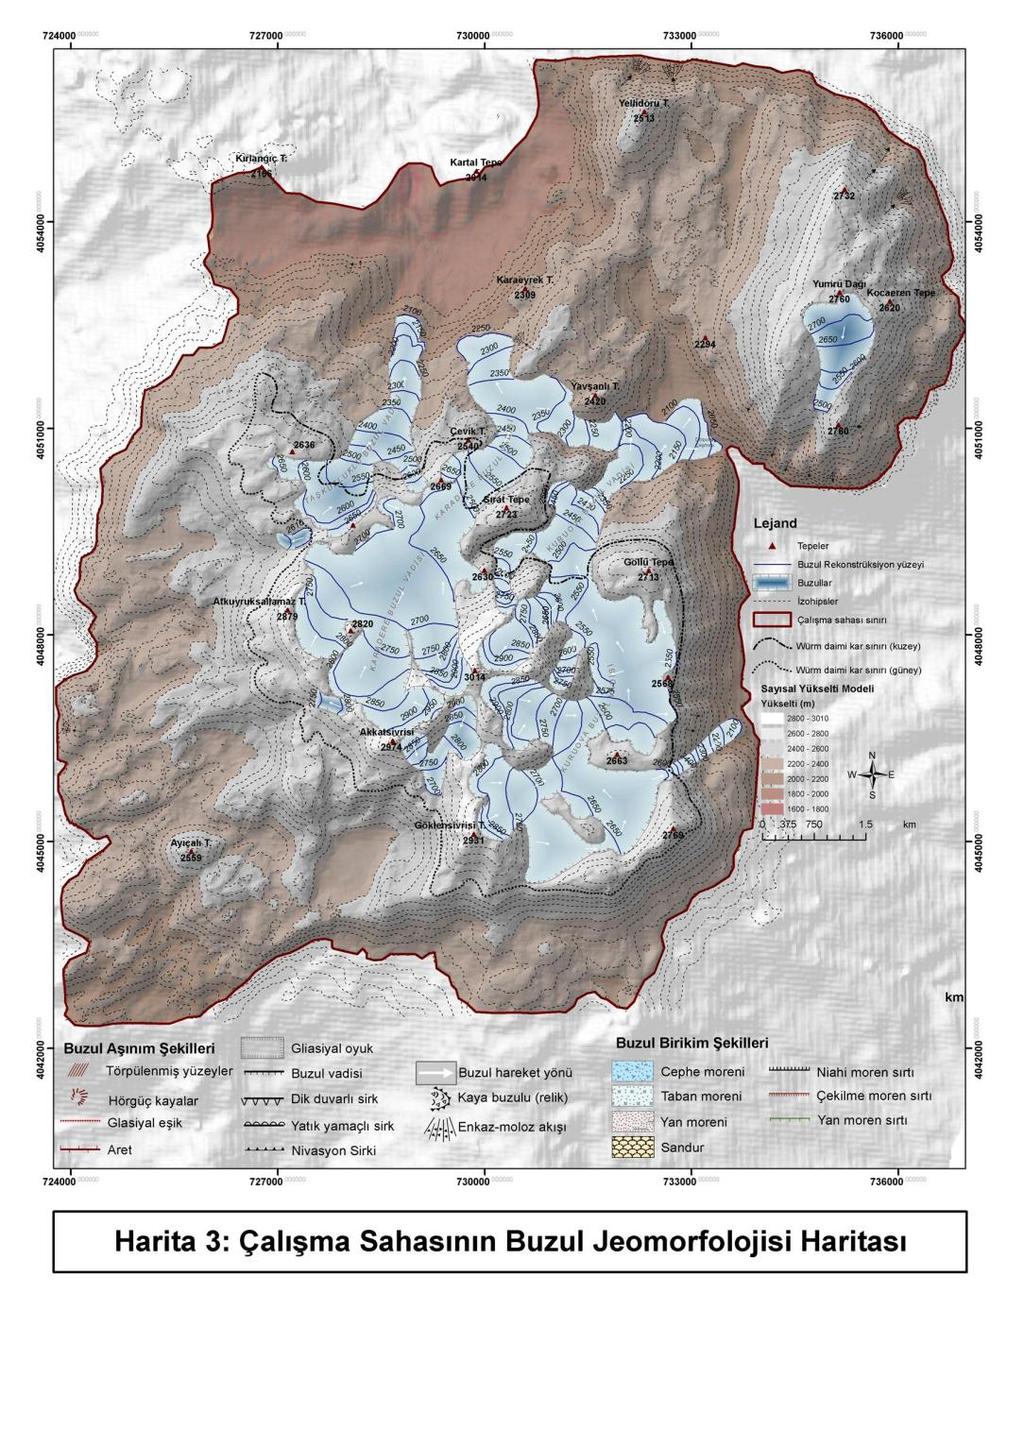 ġekil 7: ÇalıĢma sahasında kuzeye geliģen buzul vadilerinin hipsometrik eğrisi ve yüzölçümü metoduyla daimi kar sınırın (ELA) ortaya konması (Porter, 2001; Hubbard & Glasser, 2005)